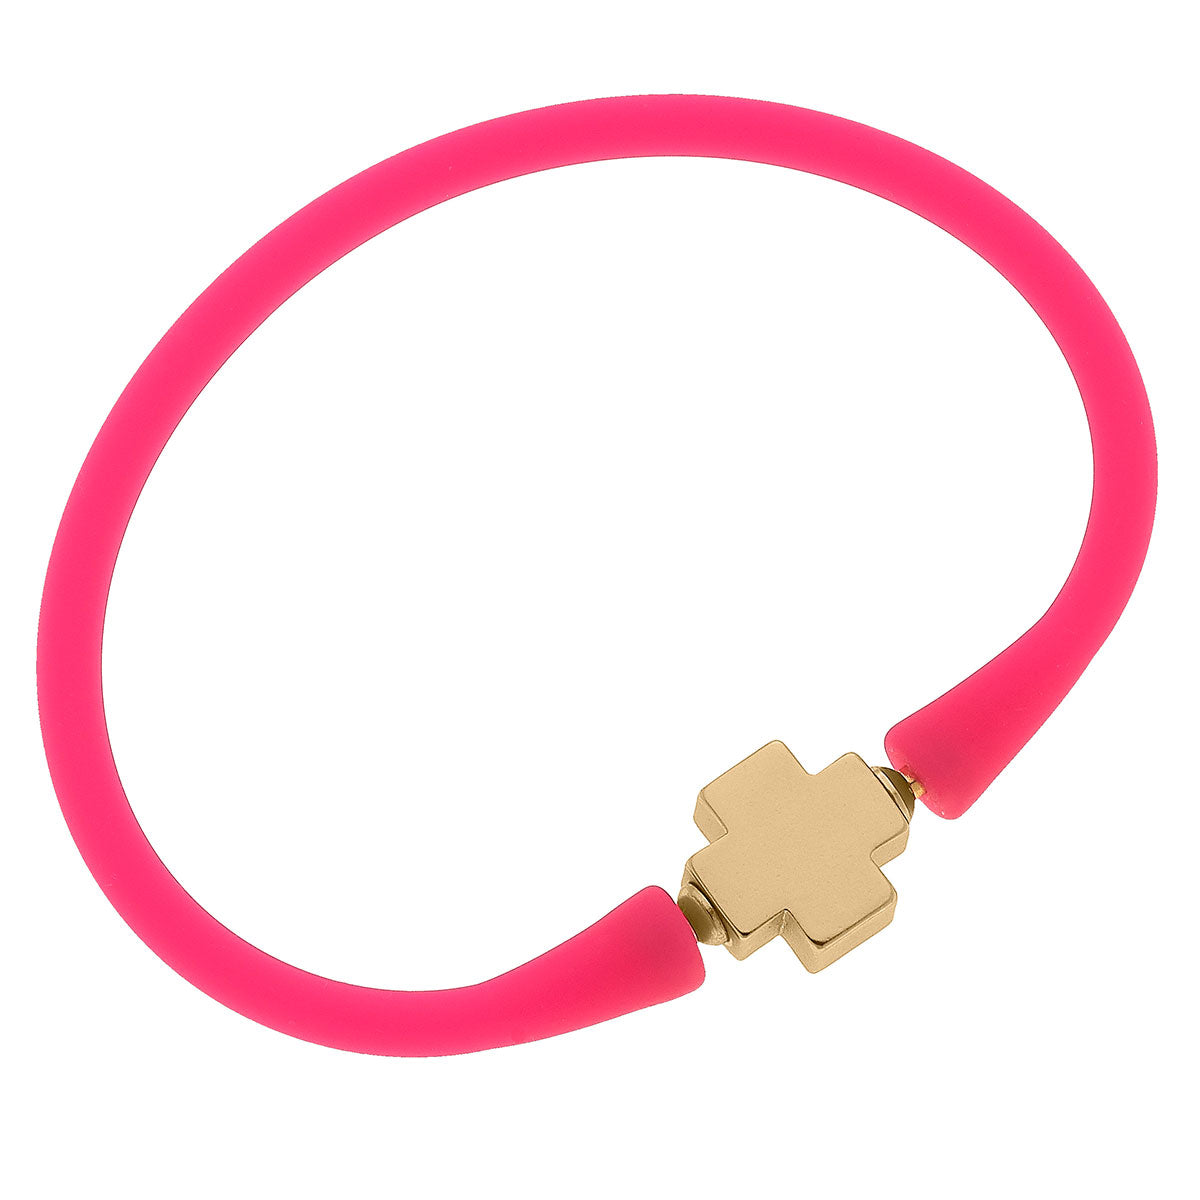 Gold cross stretch bracelet